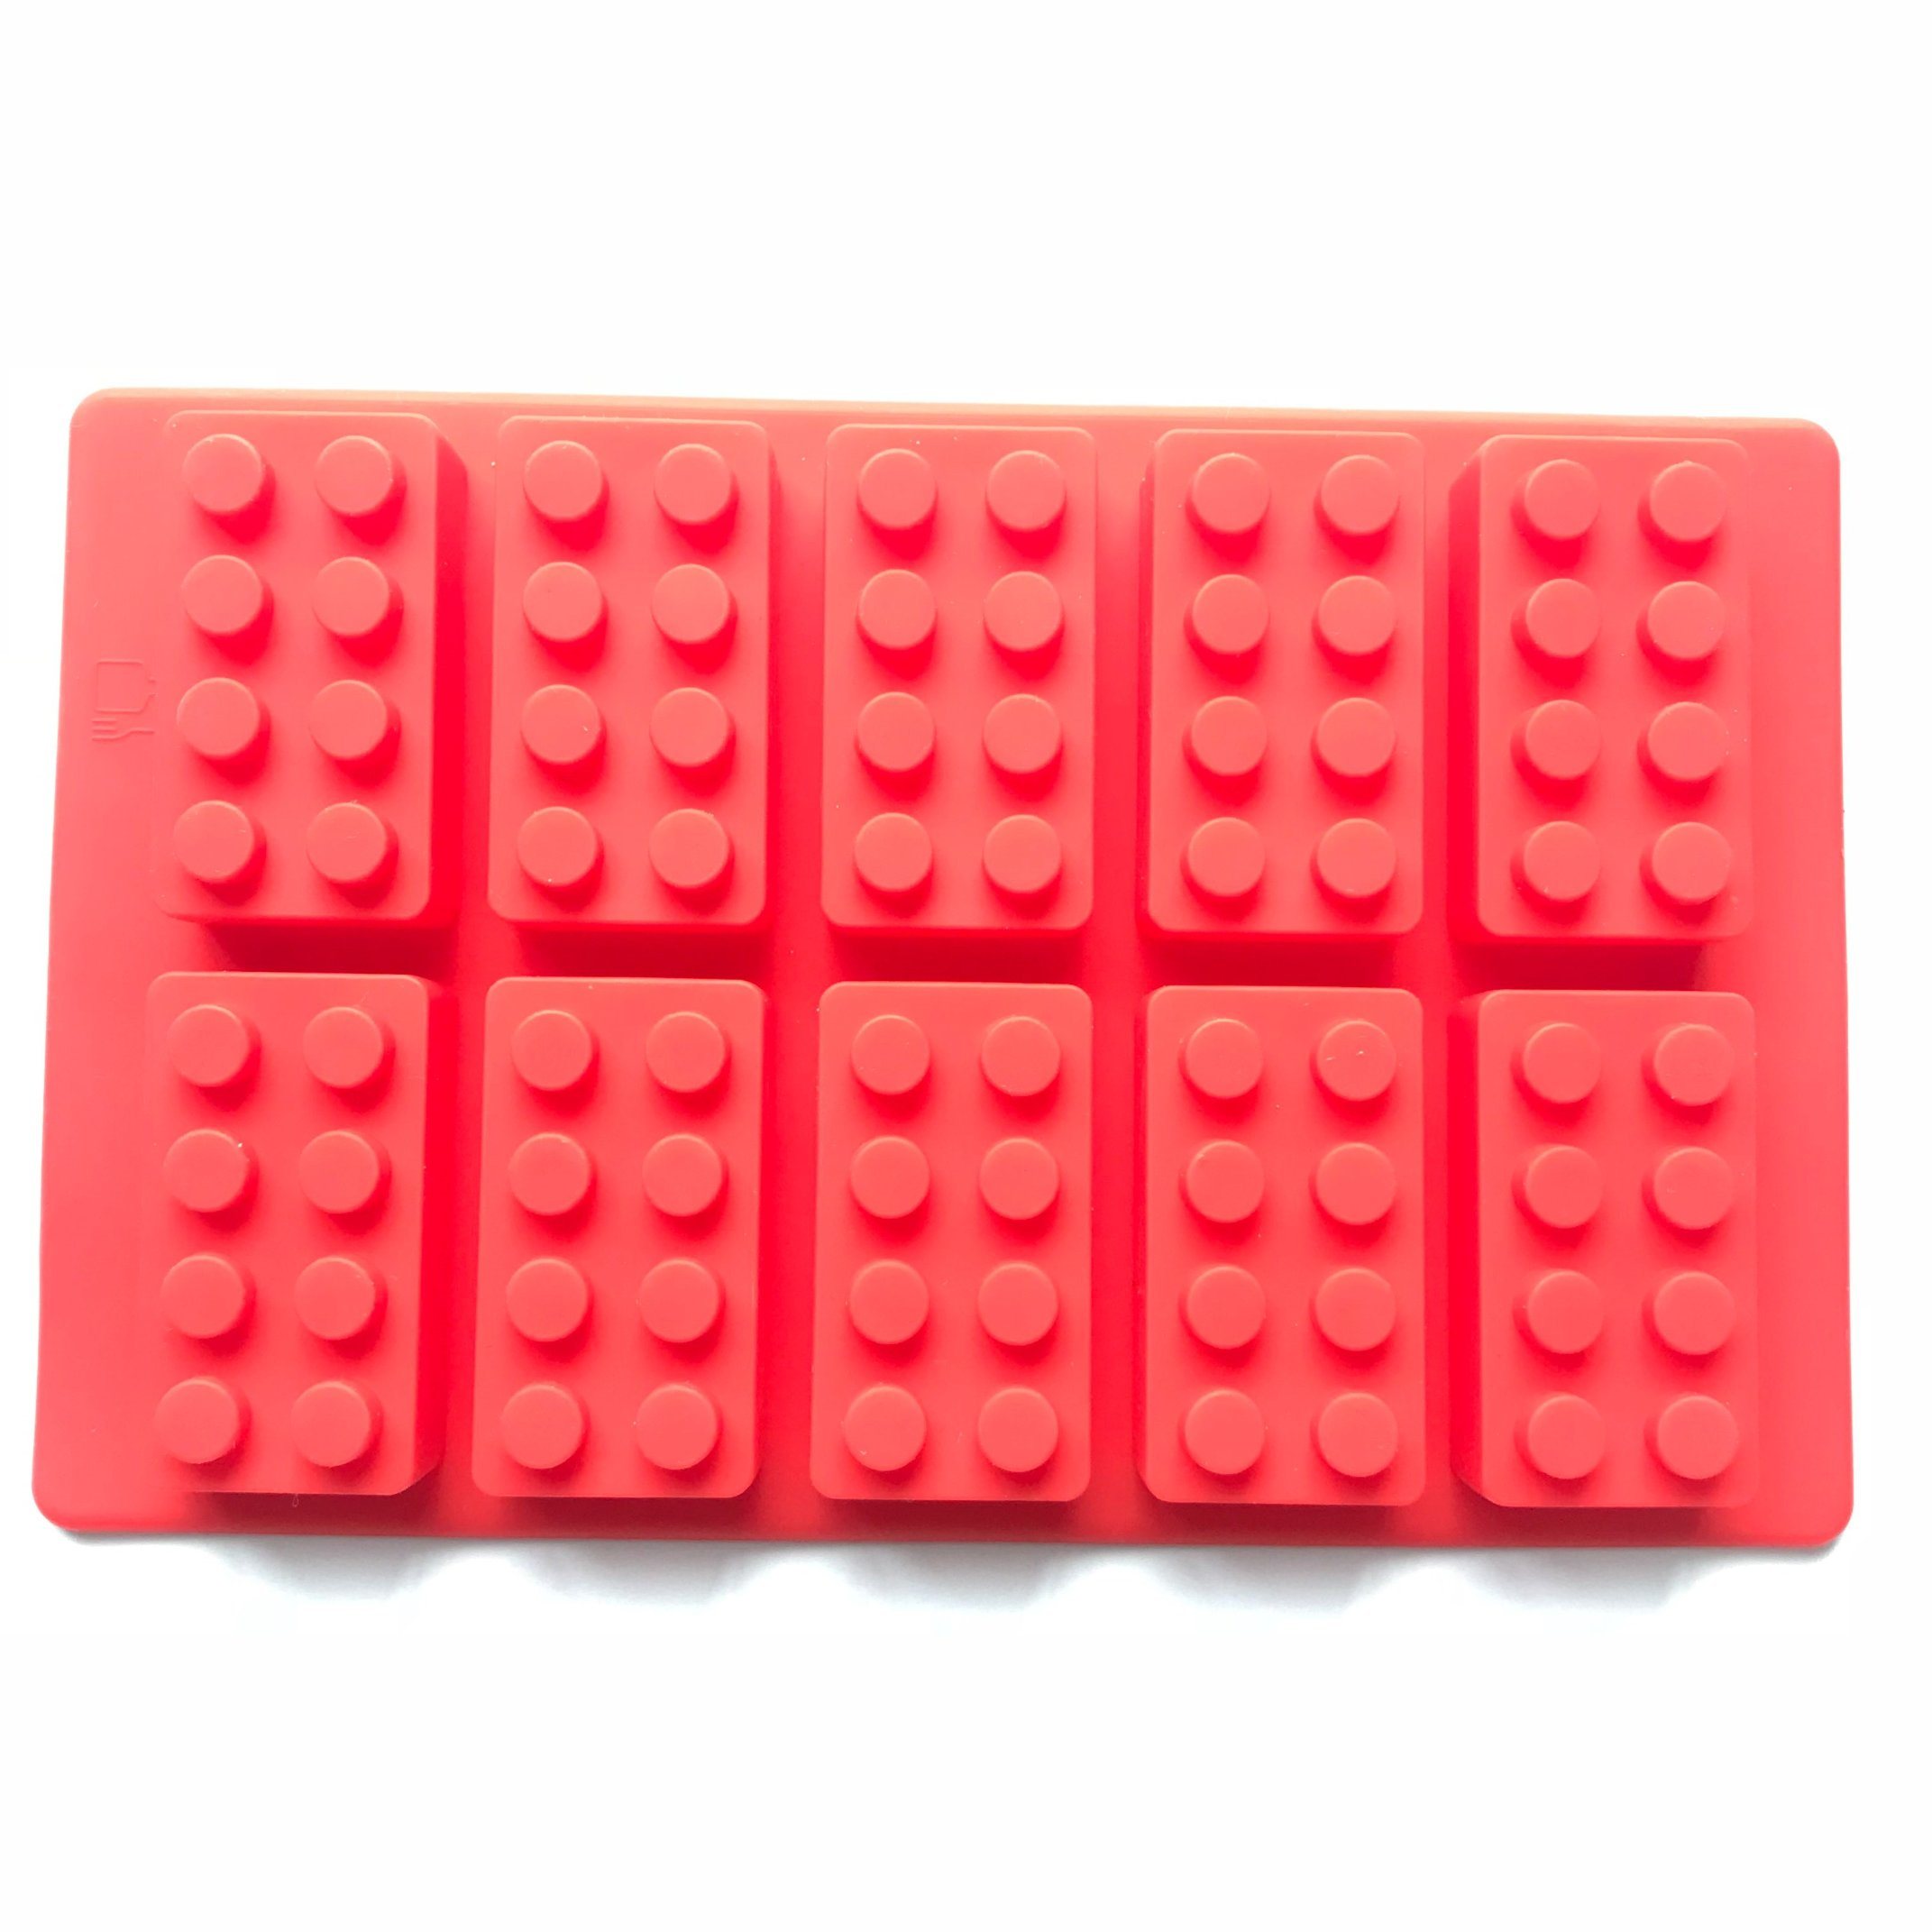 Lego Shape Food Grade Silicone Cake/Chocolate Mold